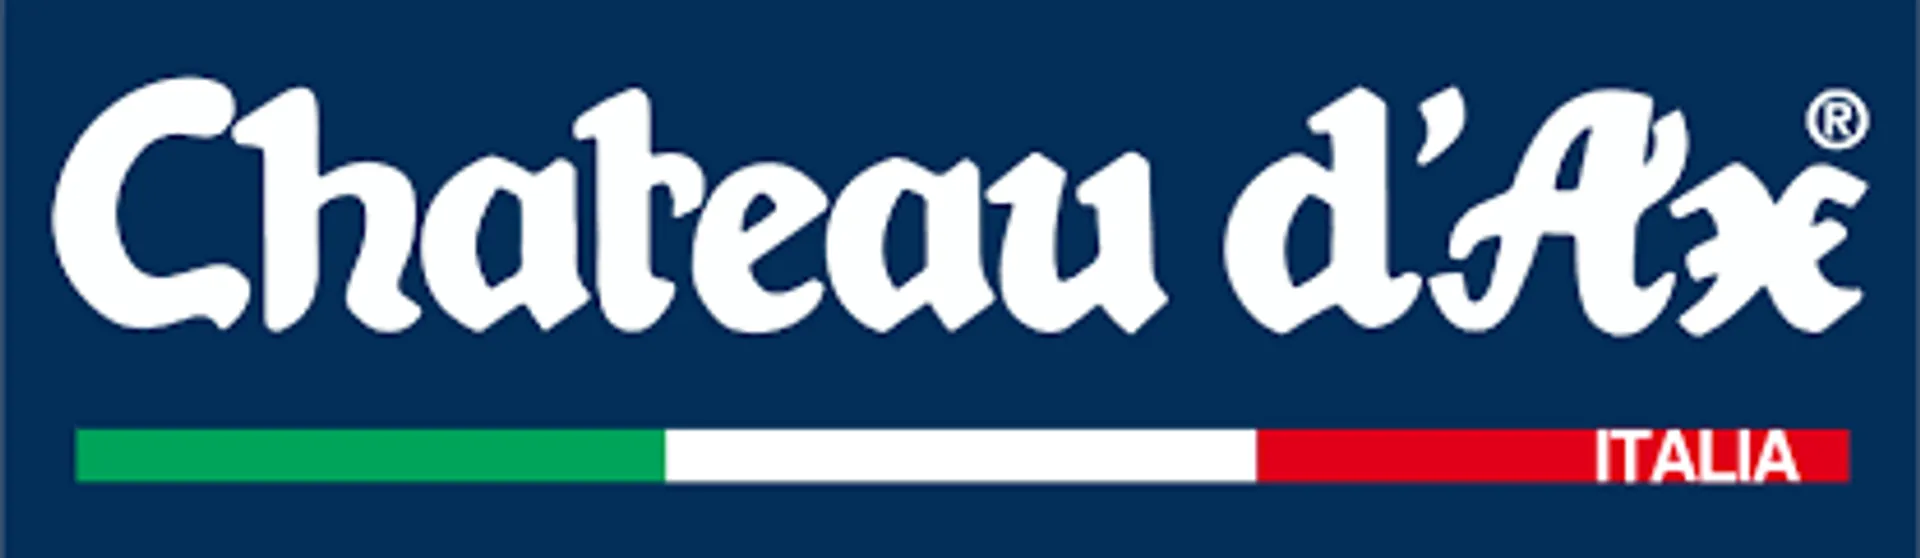 CHATEAU D'AX logo